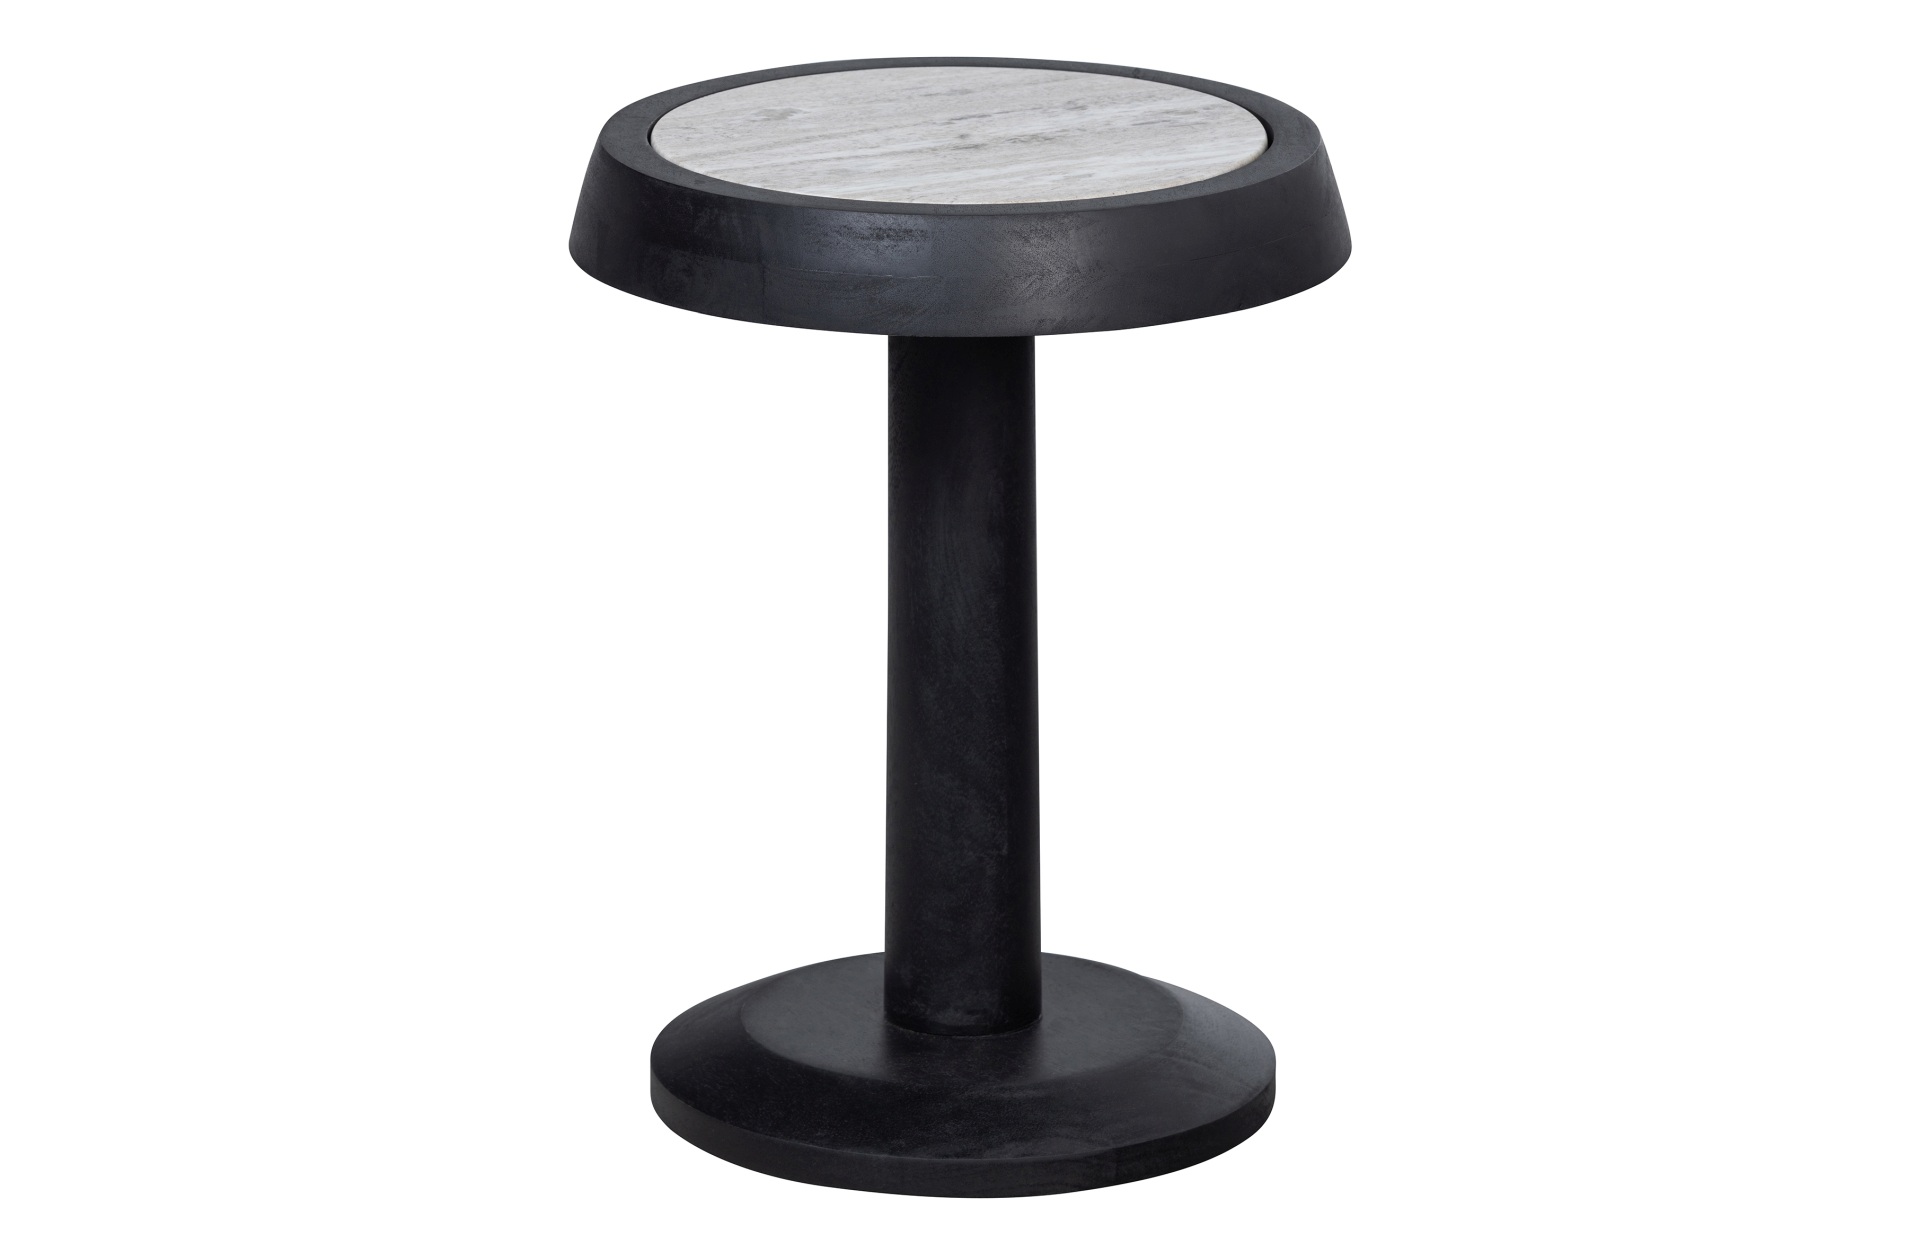 Der Beistelltisch Nanne überzeugt mit seinem schlichtem aber auch modernem Design. Gefertigt wurde der Tisch aus Mangoholz, welches einen schwarzen Farbton besitzt. Die Tischplatte ist aus Marmor.